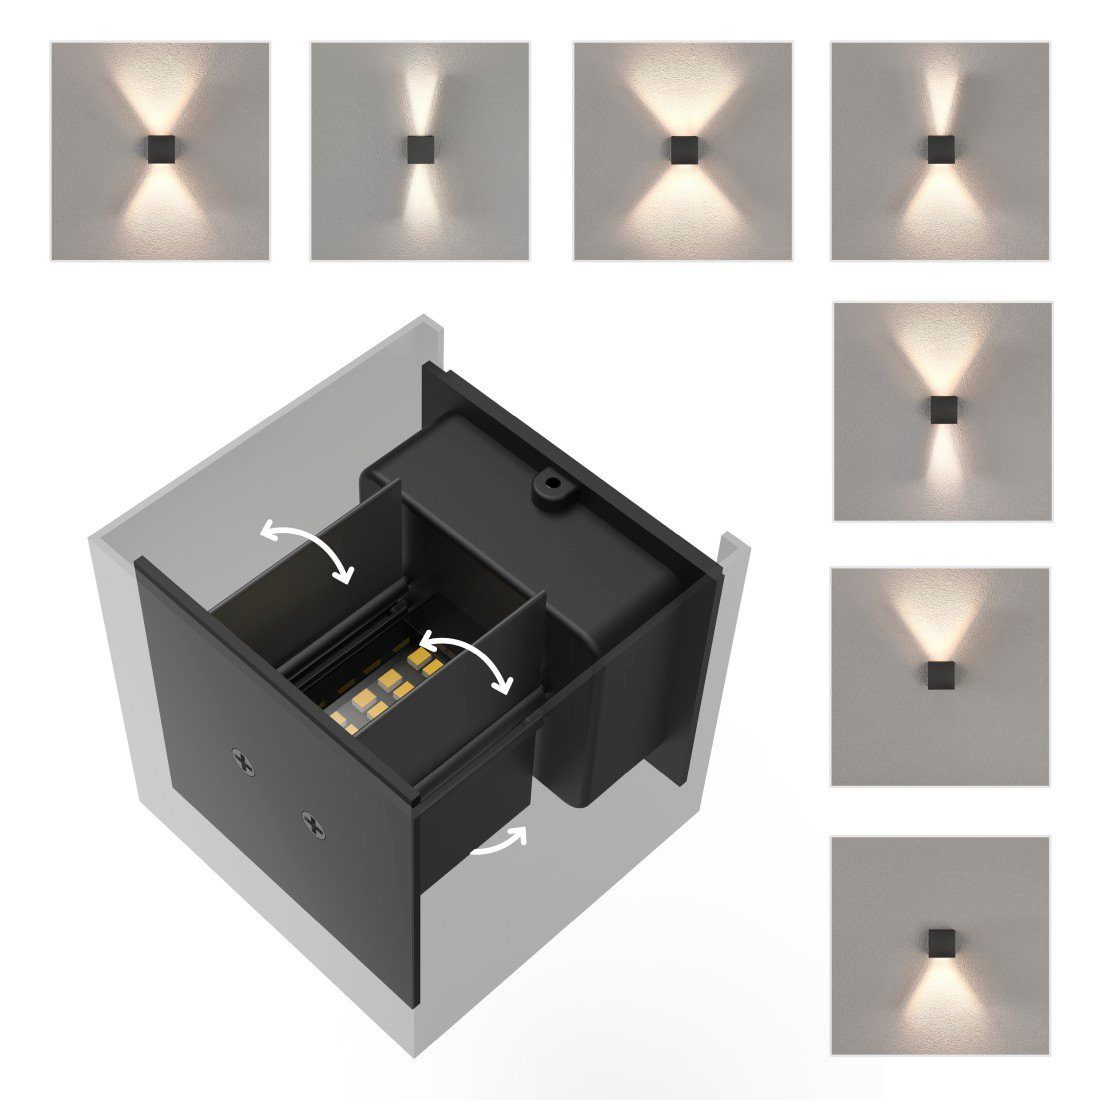 Hama LED Wandleuchte Warmweiß, von/durch: 44, Wandleuchte, innen/außen Amazon LED Wandlampe Dimmer, Lizenziert für Farbwechsel, WLAN IP schwarz Tageslichtweiß, Außenlampe Smart Home